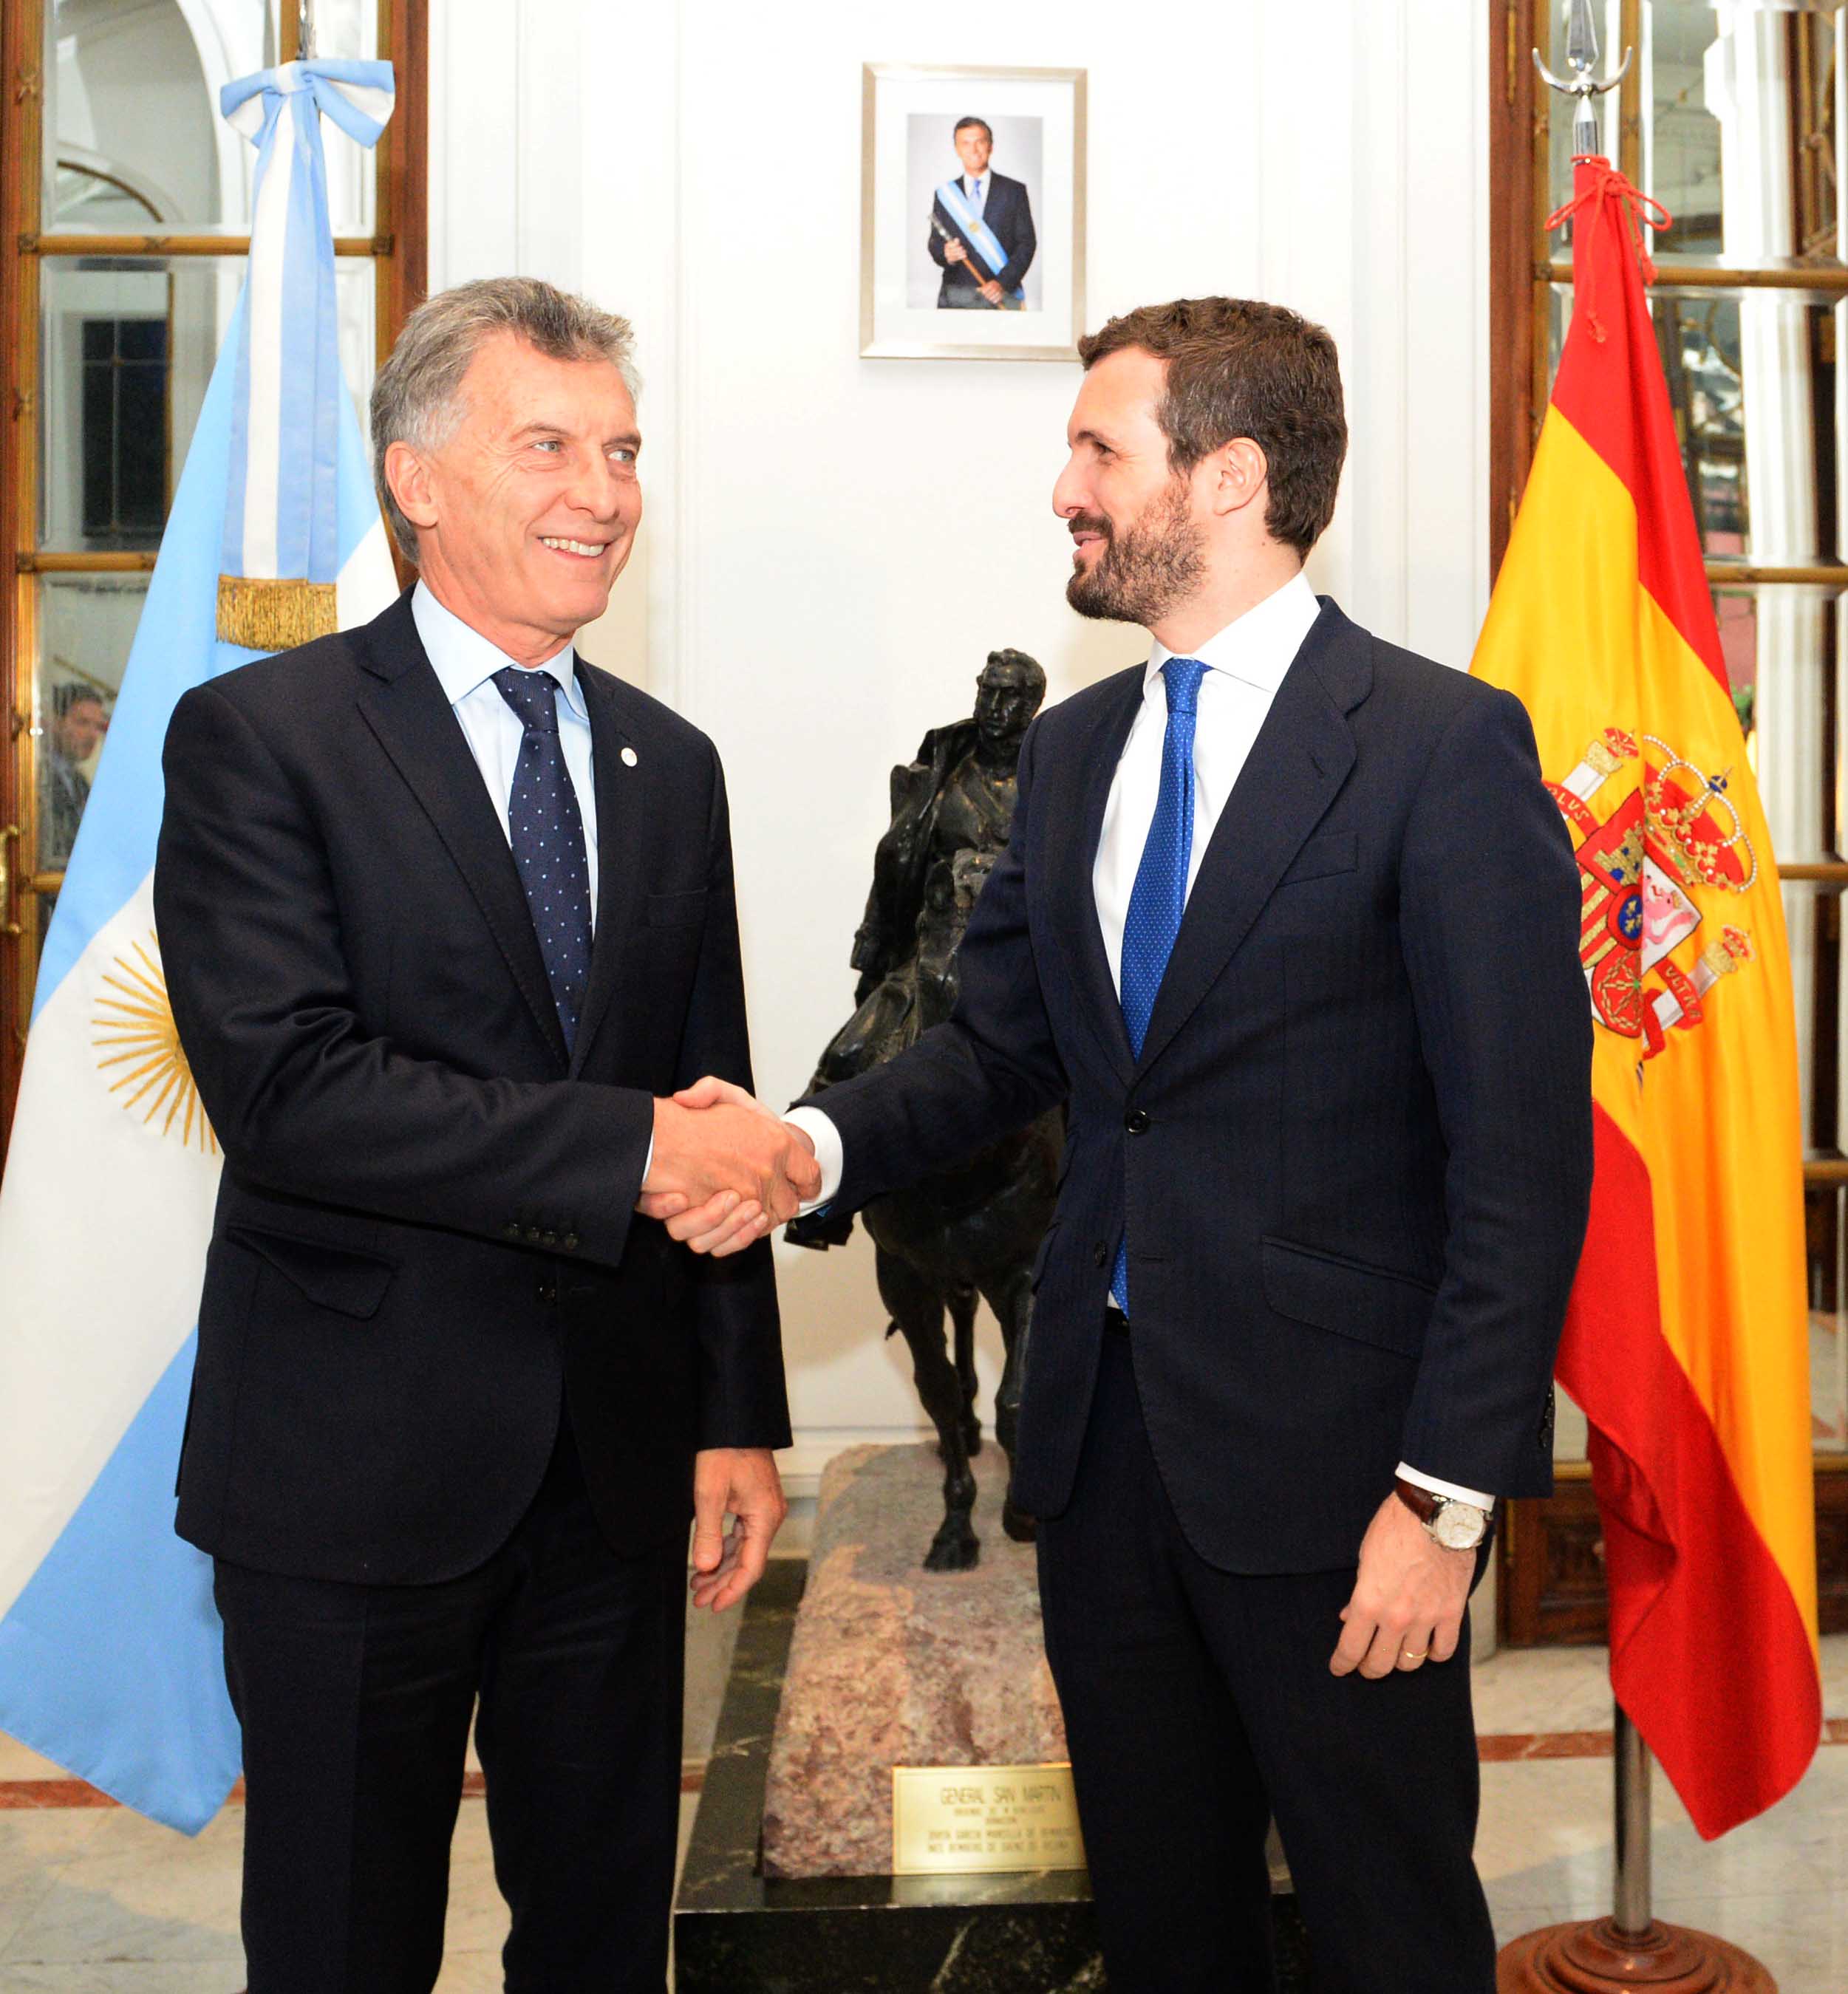 El Presidente Macri se reunió con el titular del Partido Popular.